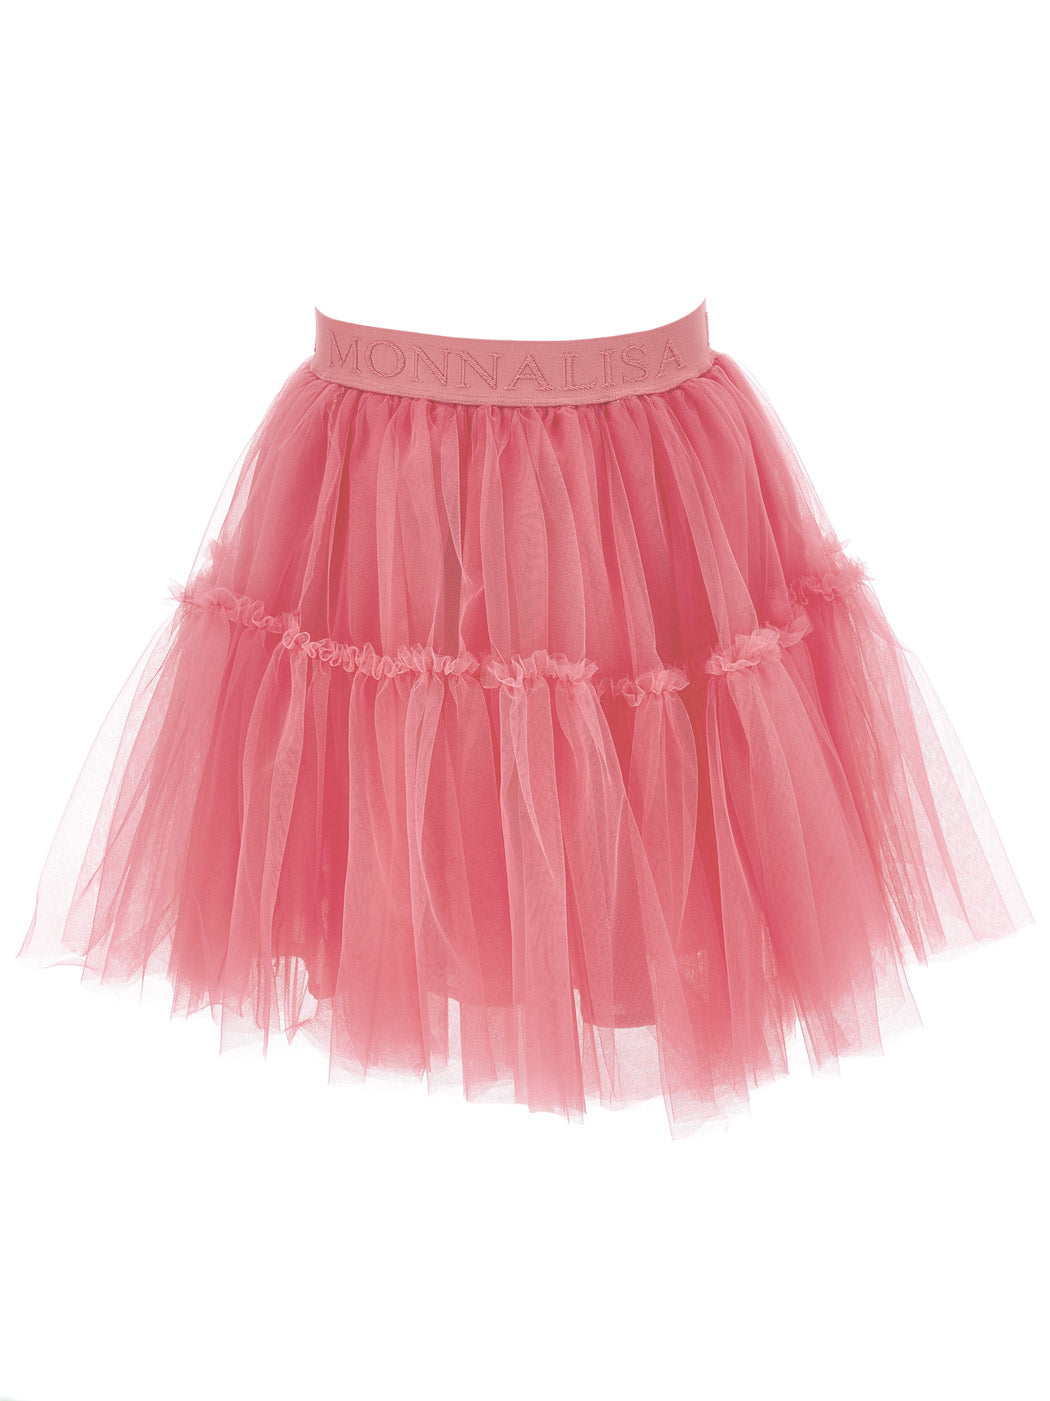 MONNALISA Φούξια Τούλινη Φούστα για κορίτσι-17BGON